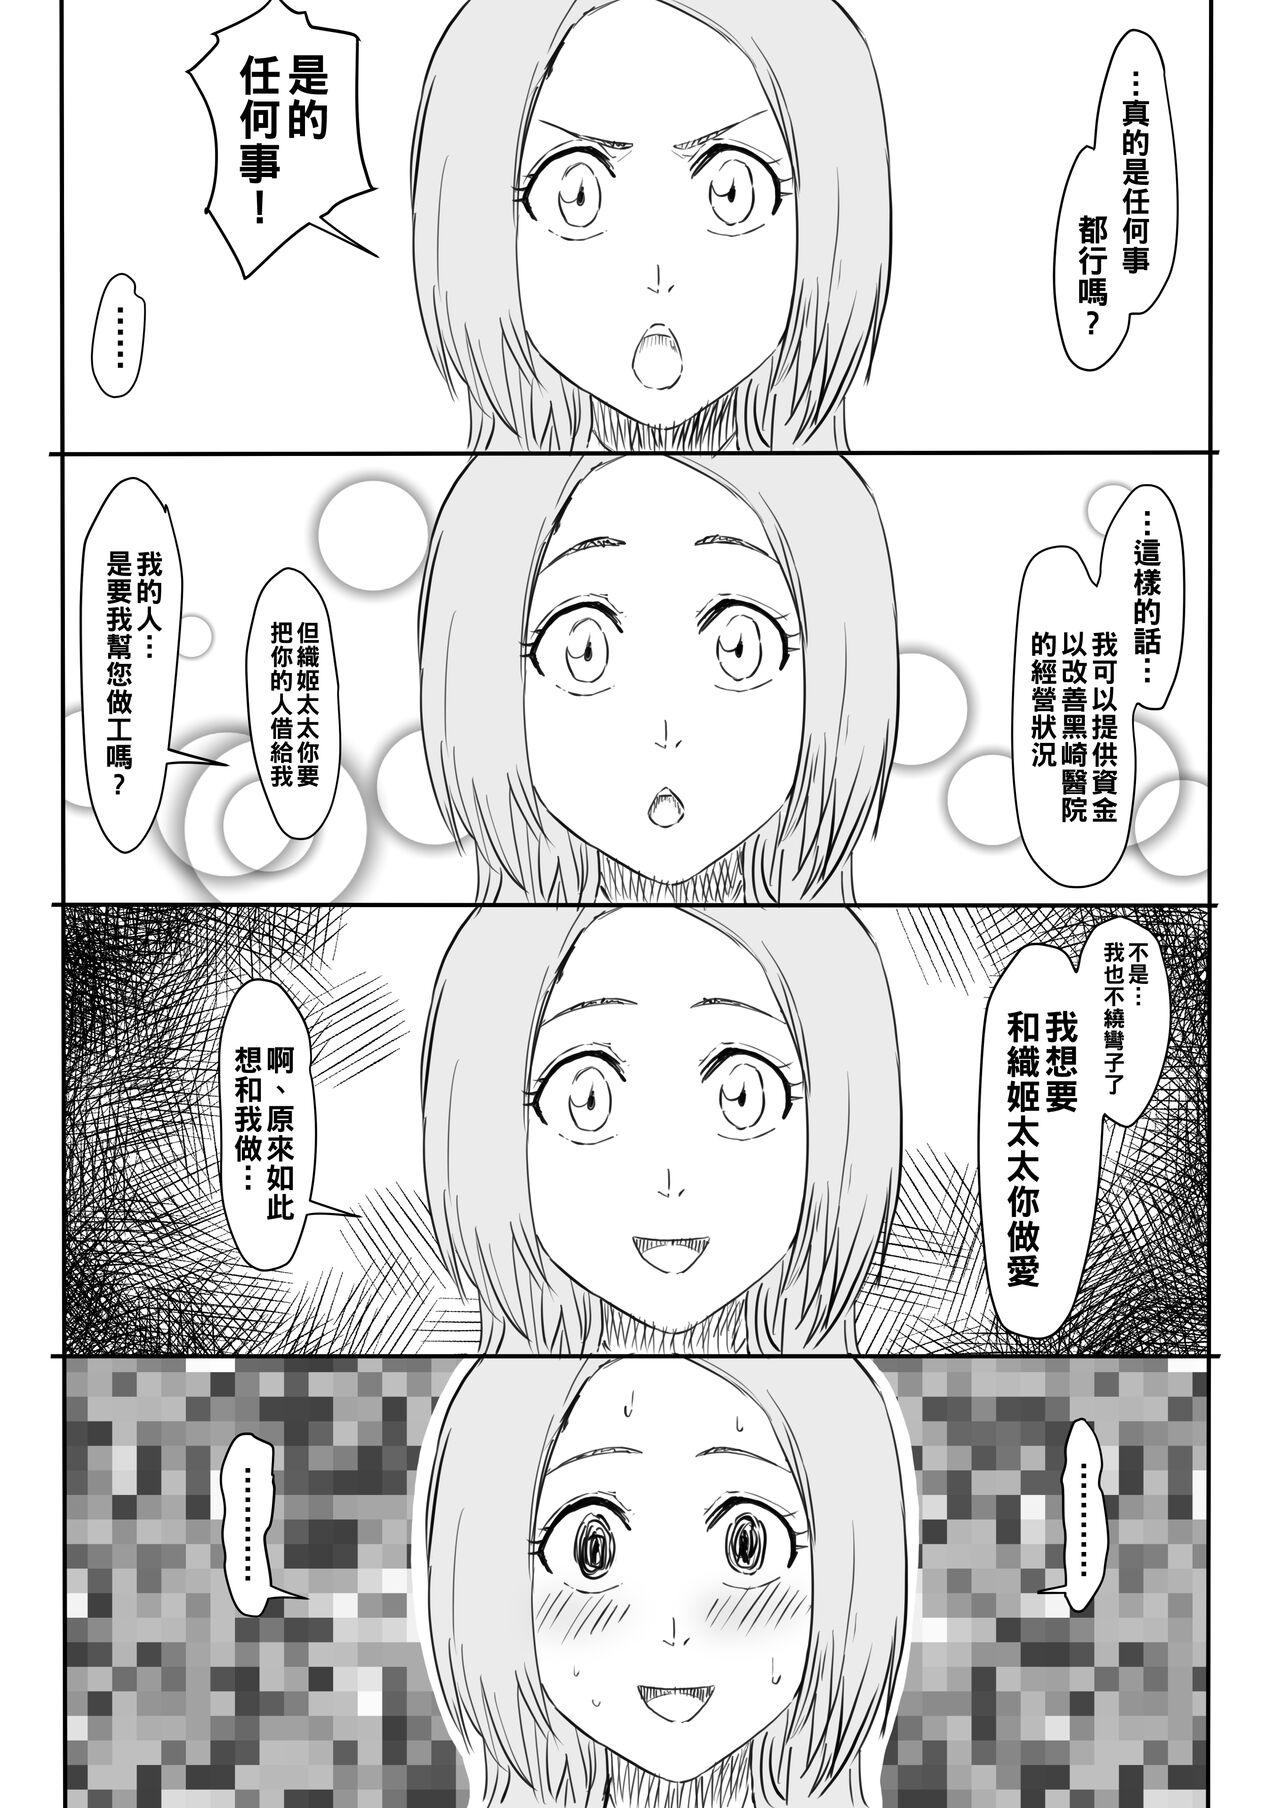 Delicia Orihime Manga - Bleach Fodendo - Page 3